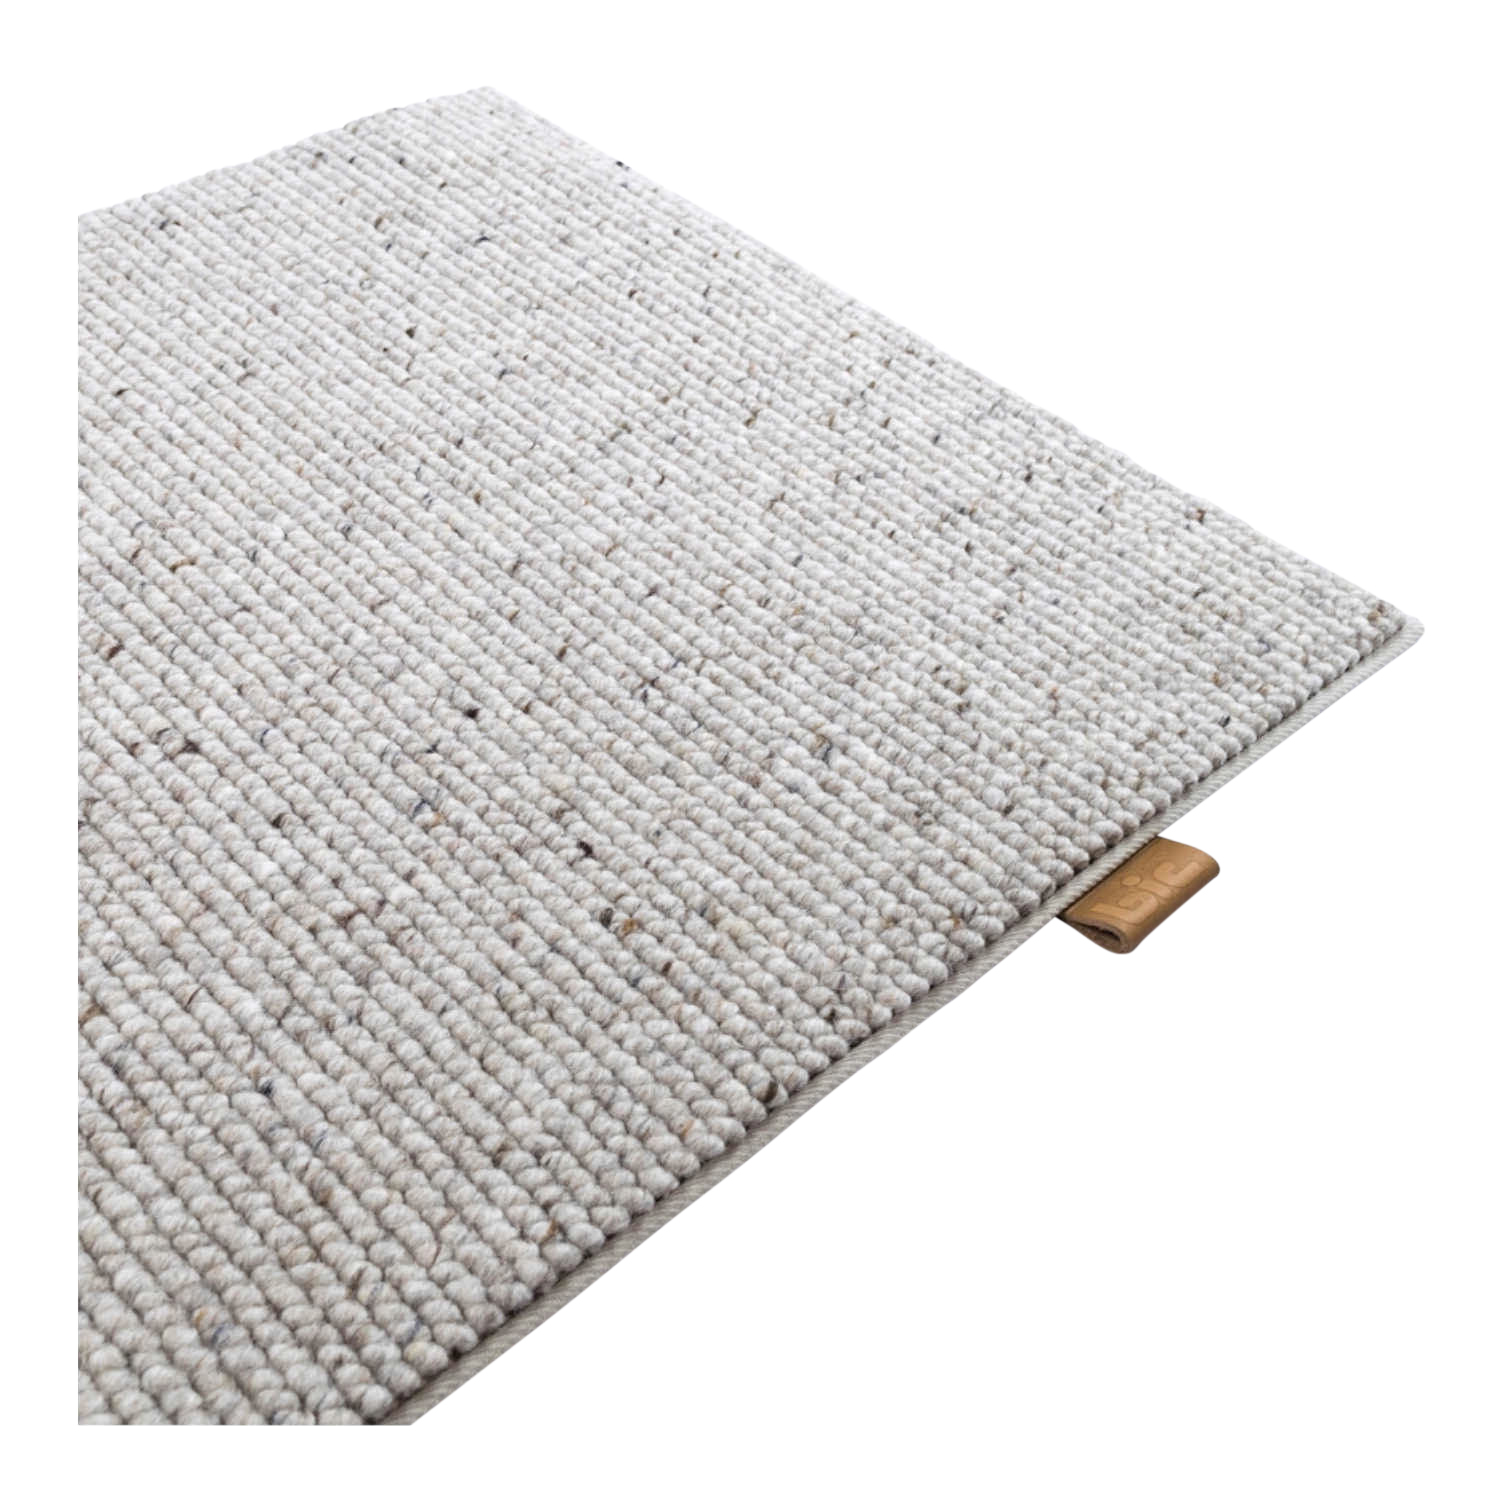 Atrar Teppich, Farbe 5207 sandybrown, Grösse 200 x 200cm von B.I.C Carpets